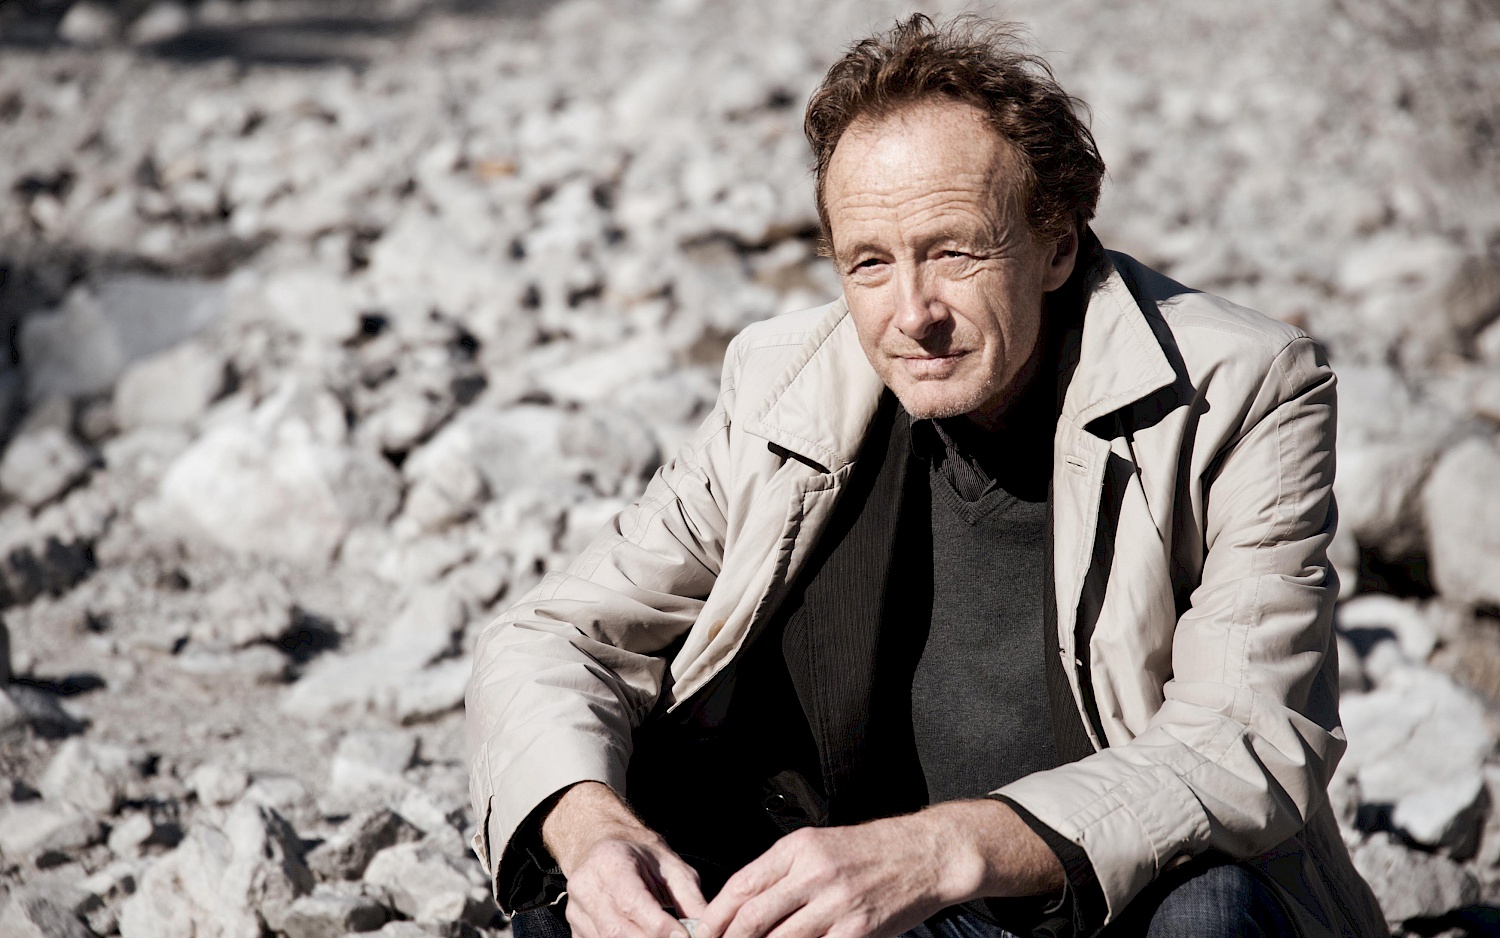 Der Komponist Beat Furrer sitzend in heller Jacke inmitten einer steinigen Landschaft.